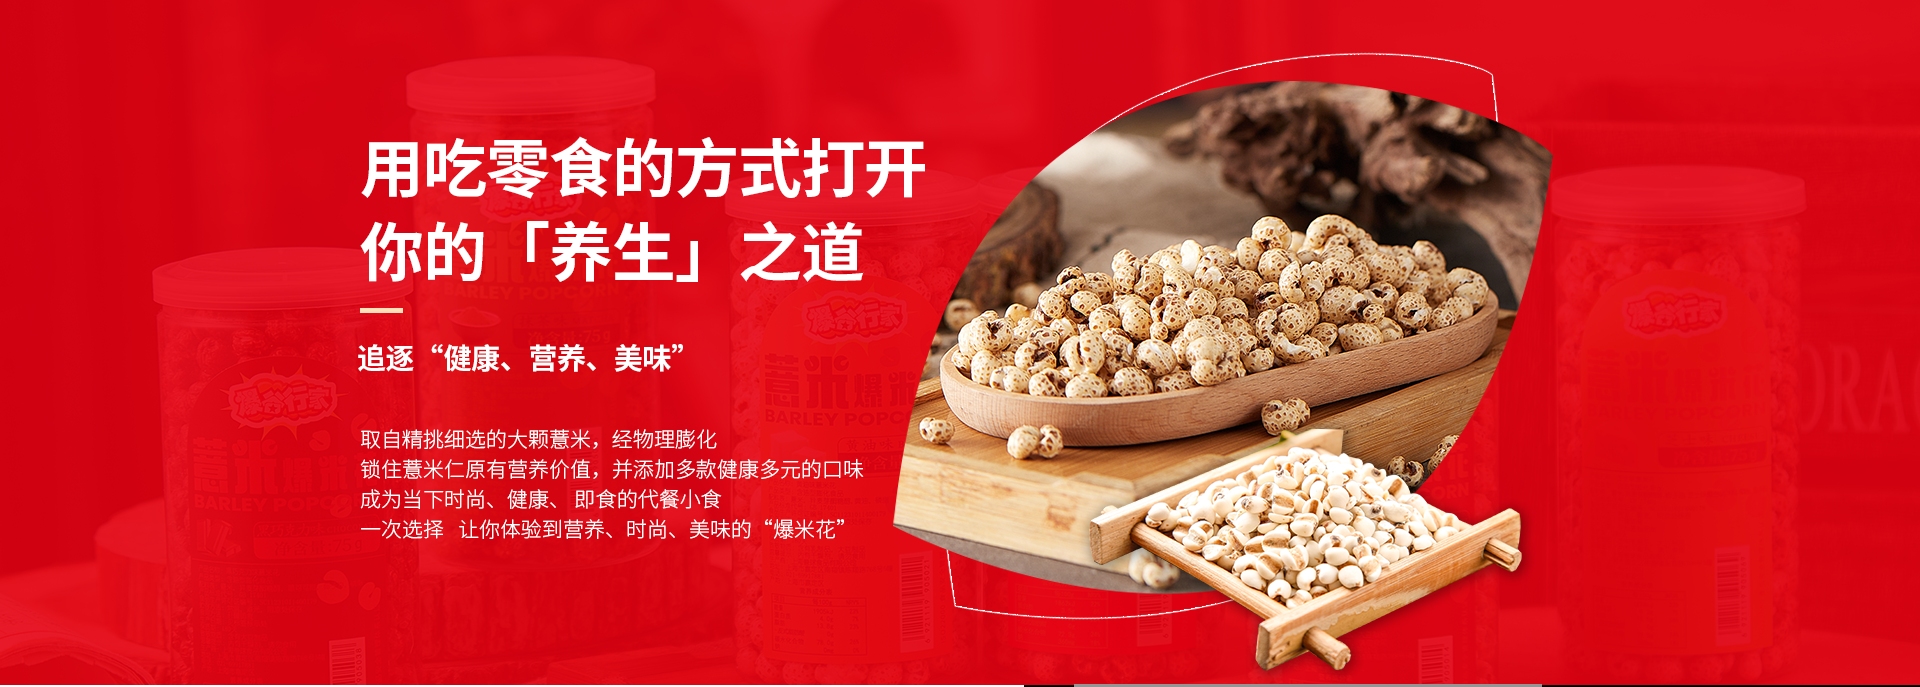 上海誉球食品有限公司:爆谷行家——传统爆米花的现代革新者